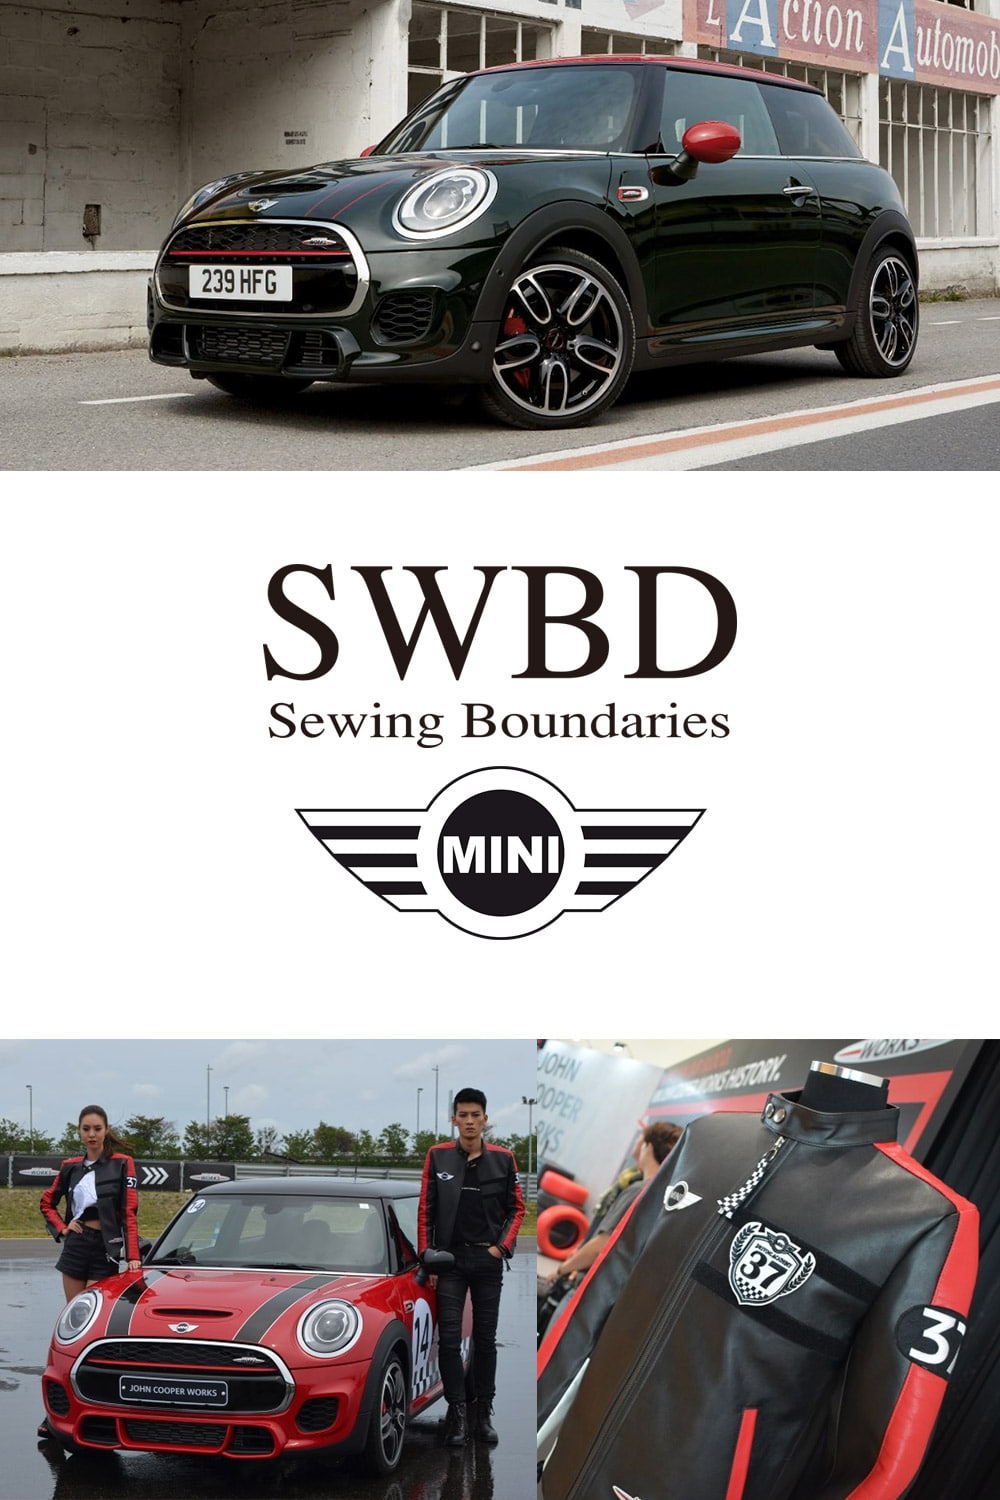 BMW MINI X SWBD